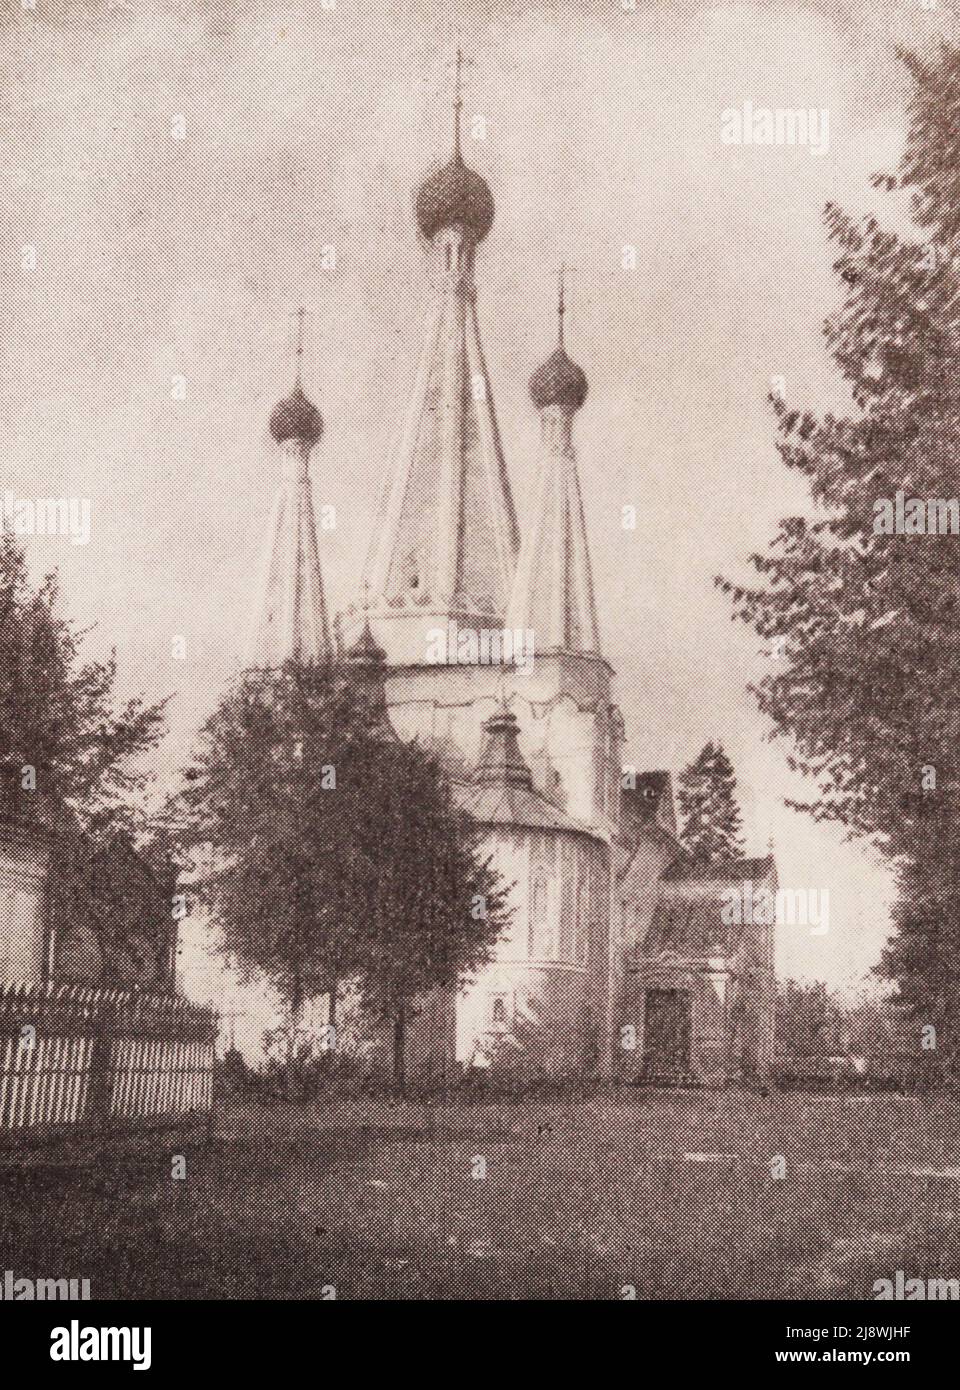 Dormizione splendida Chiesa del Monastero di Alekseevsky a Uglich. Foto della fine del 19th secolo. Foto Stock